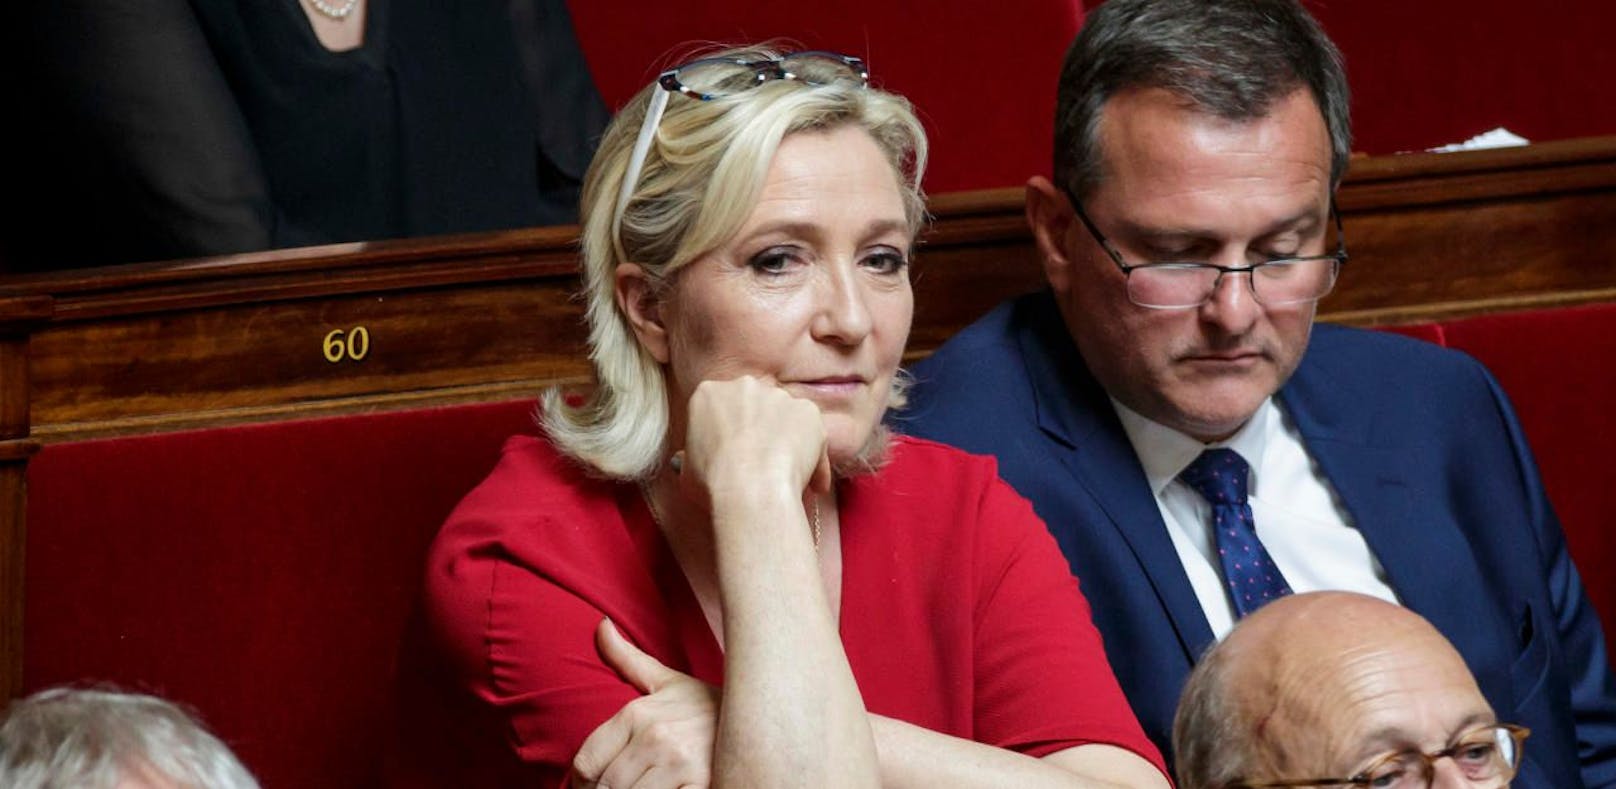 Justiz streicht Le Pens Partei eine Million Euro